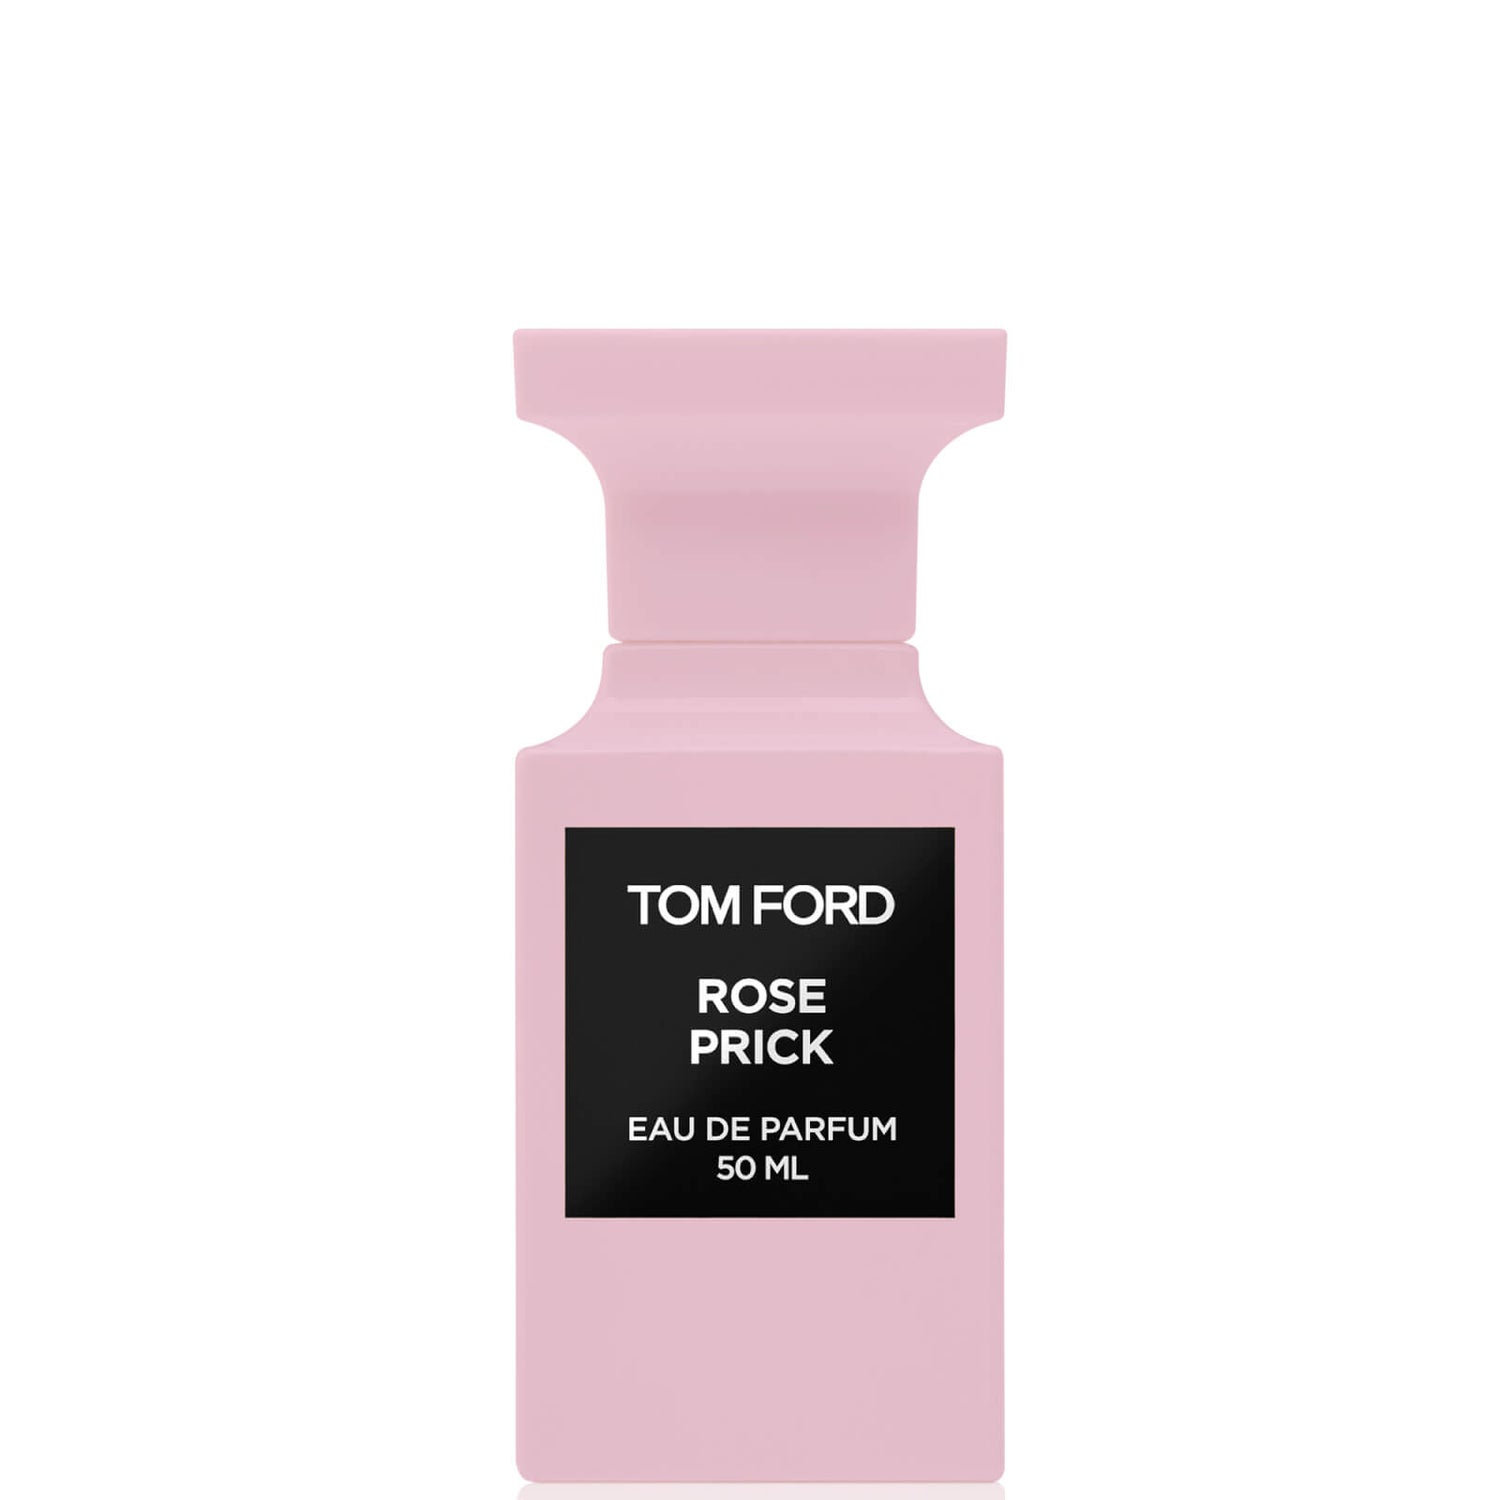 Tom Ford Rose Prick Eau de Parfum Spray - 50ml Tom Ford Rose Prick parfémovaná voda ve spreji - 50 ml